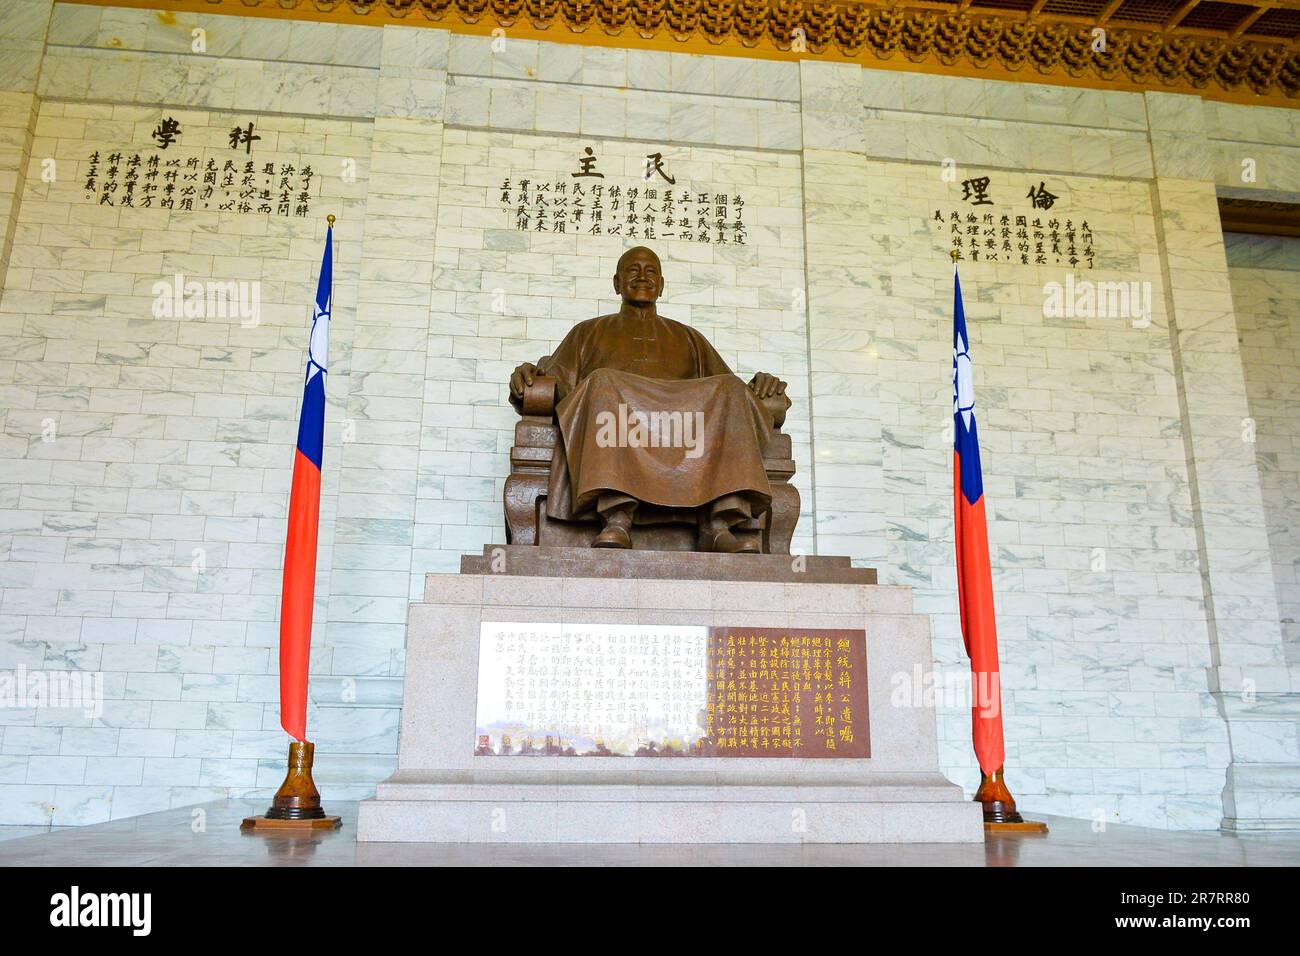 The great giant bronze statue of Chiang Kai-shek in the main chamber of the Chiang Kai-shek Memorial Hall, Taipei, Taiwan Stock Photo